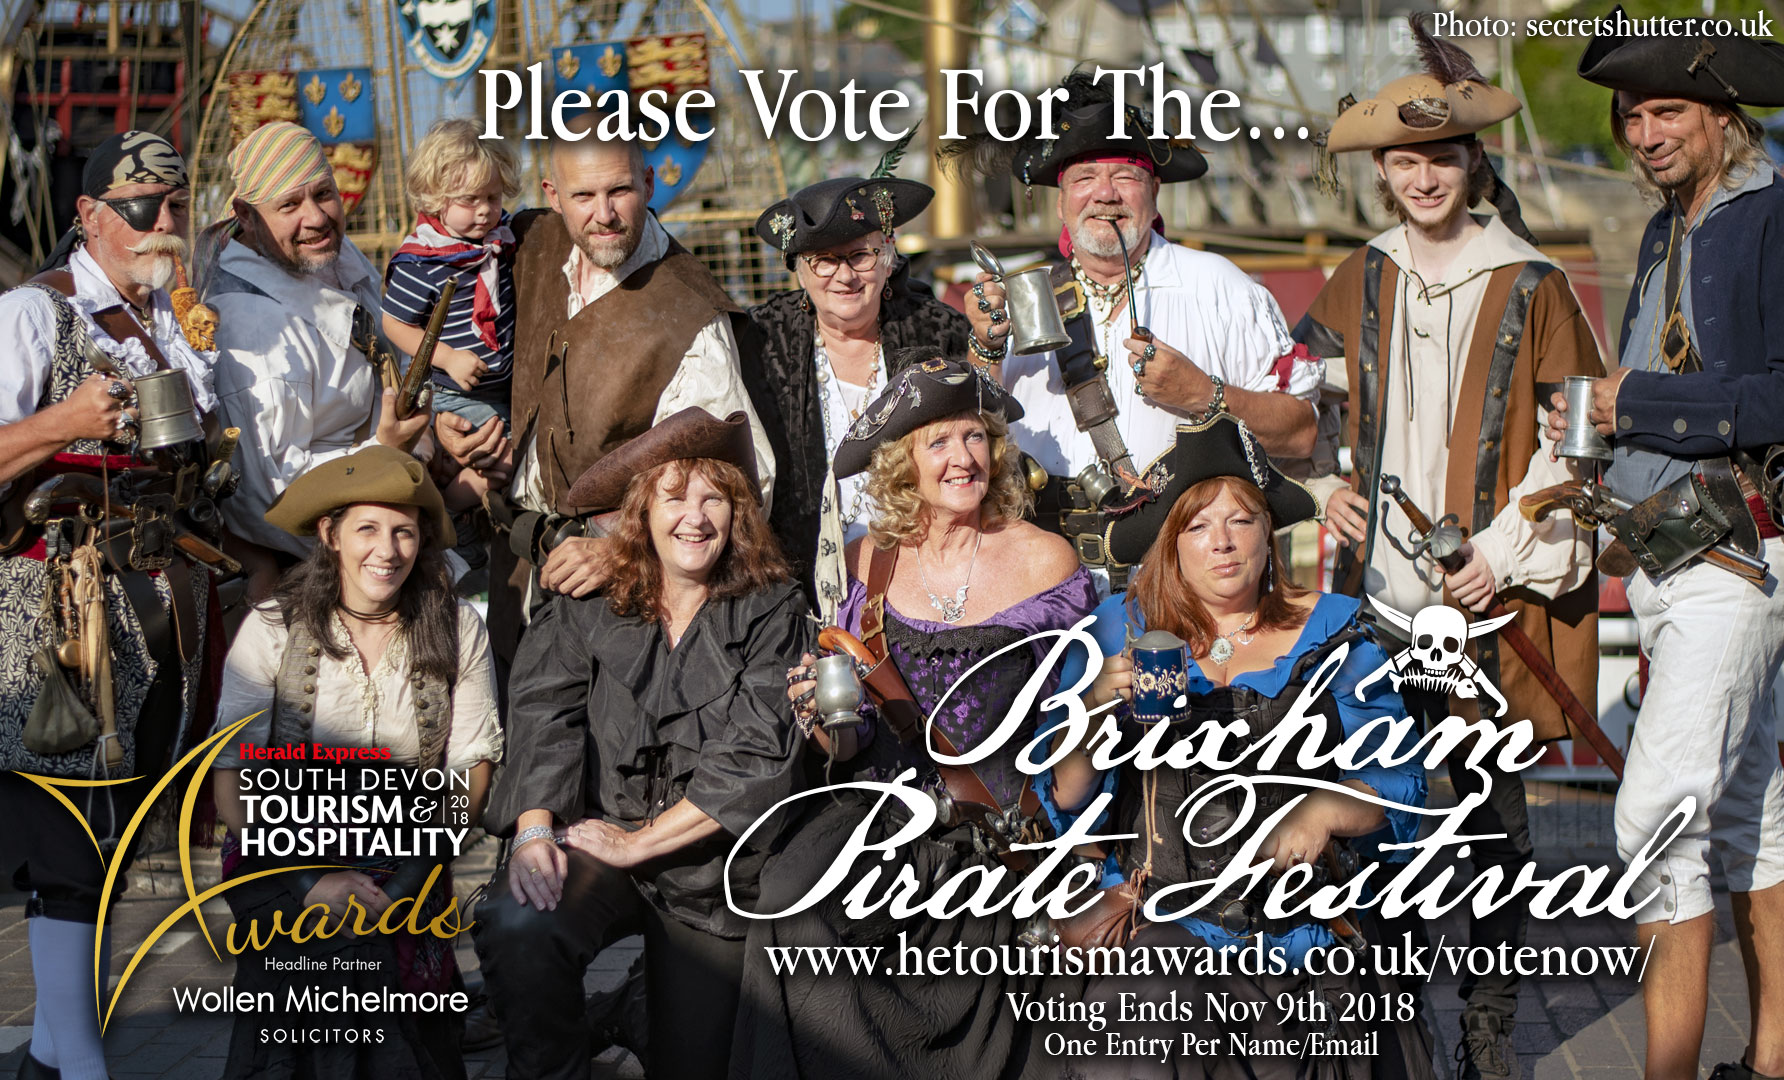 Please Vote for The Brixham Pirate Festival!